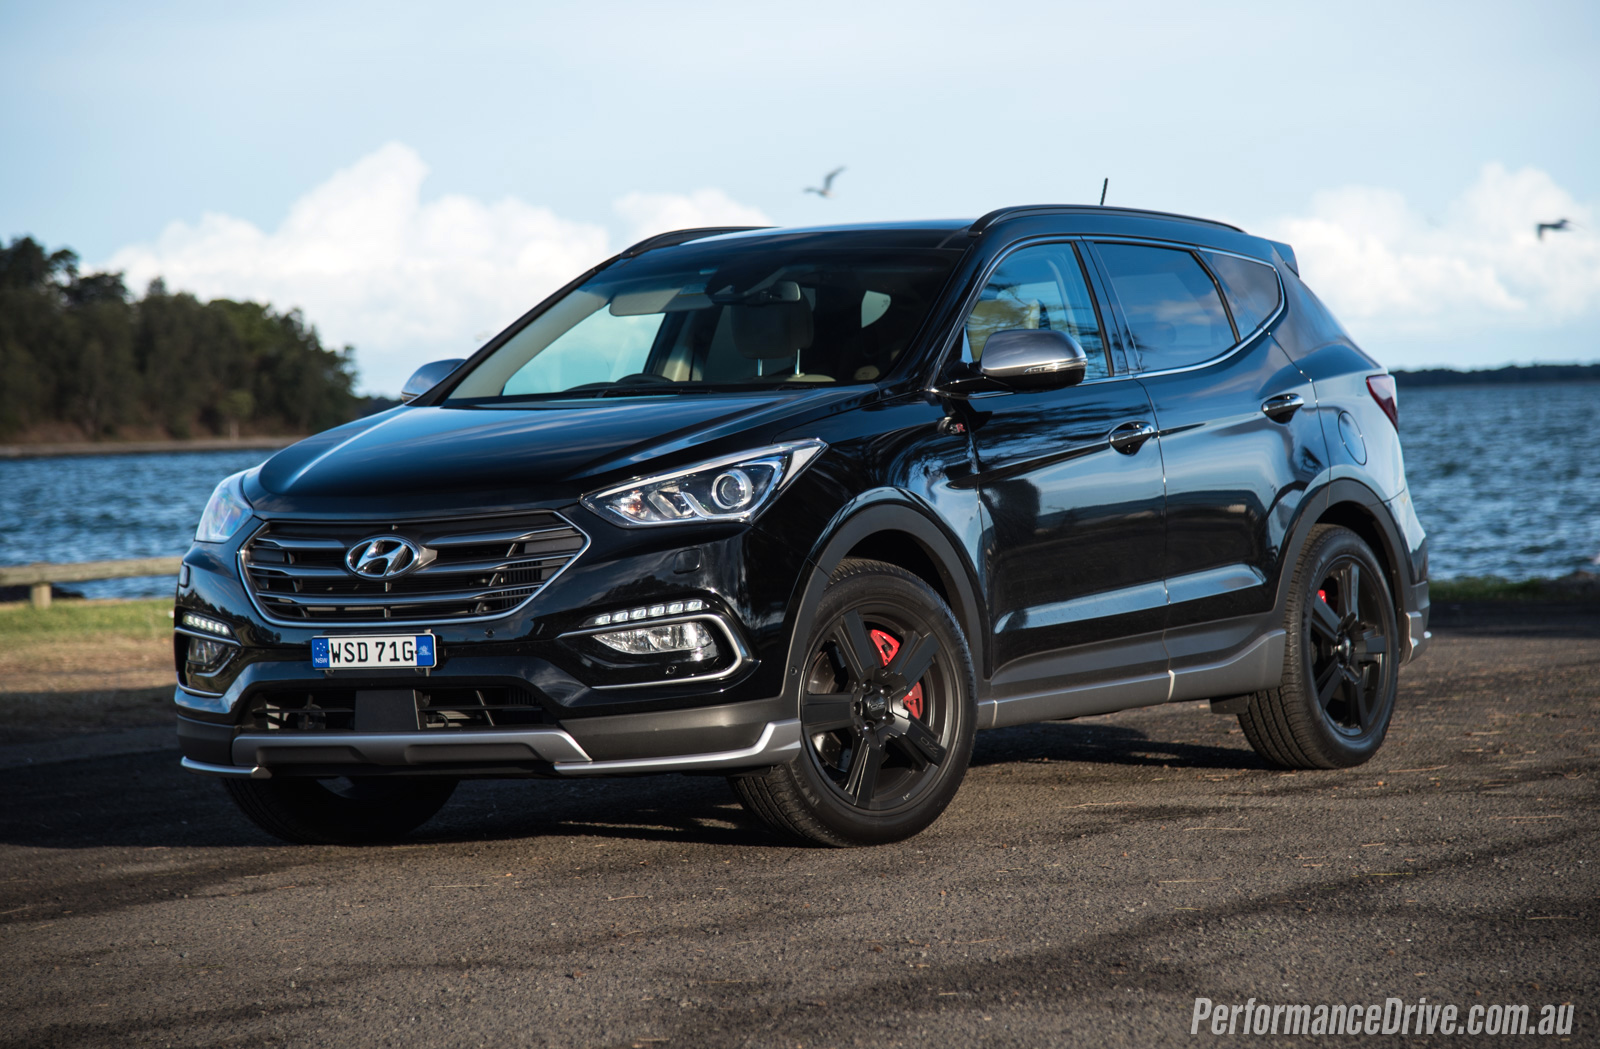 2016 Hyundai Santa Fe SR review video PerformanceDrive